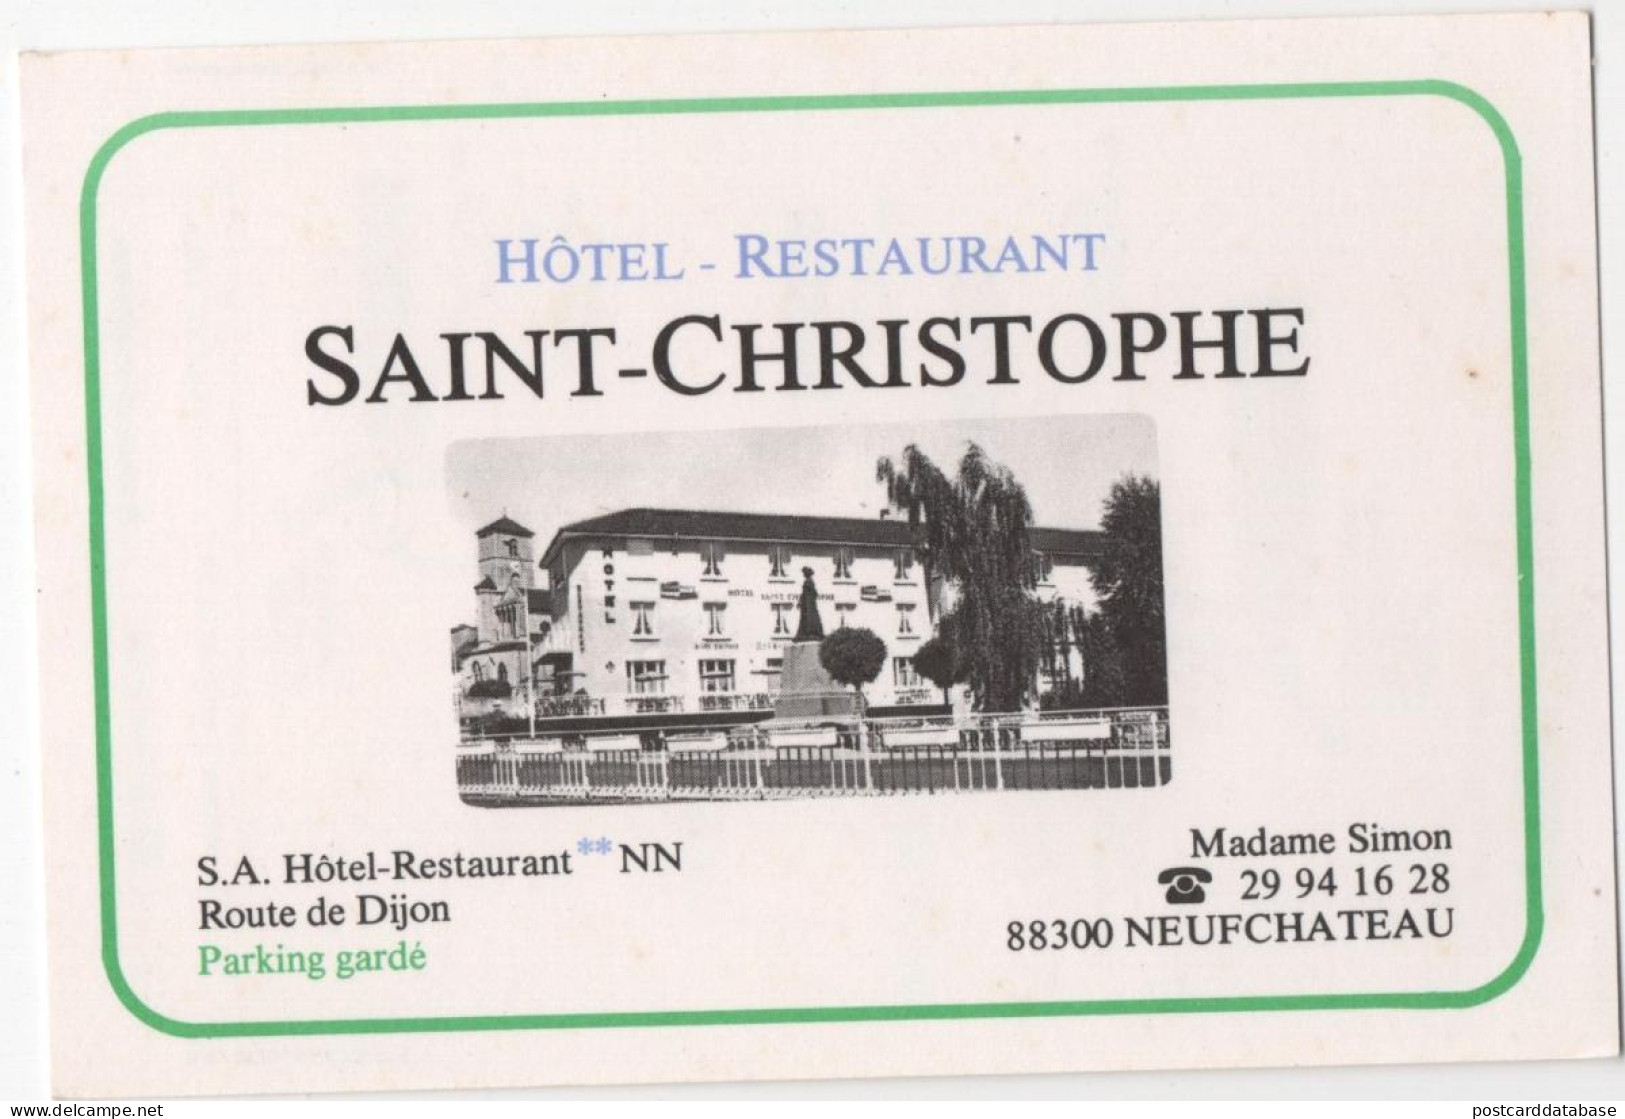 Hôtel Restaurant Saint-Christophe - Neufchâteau - Neufchateau